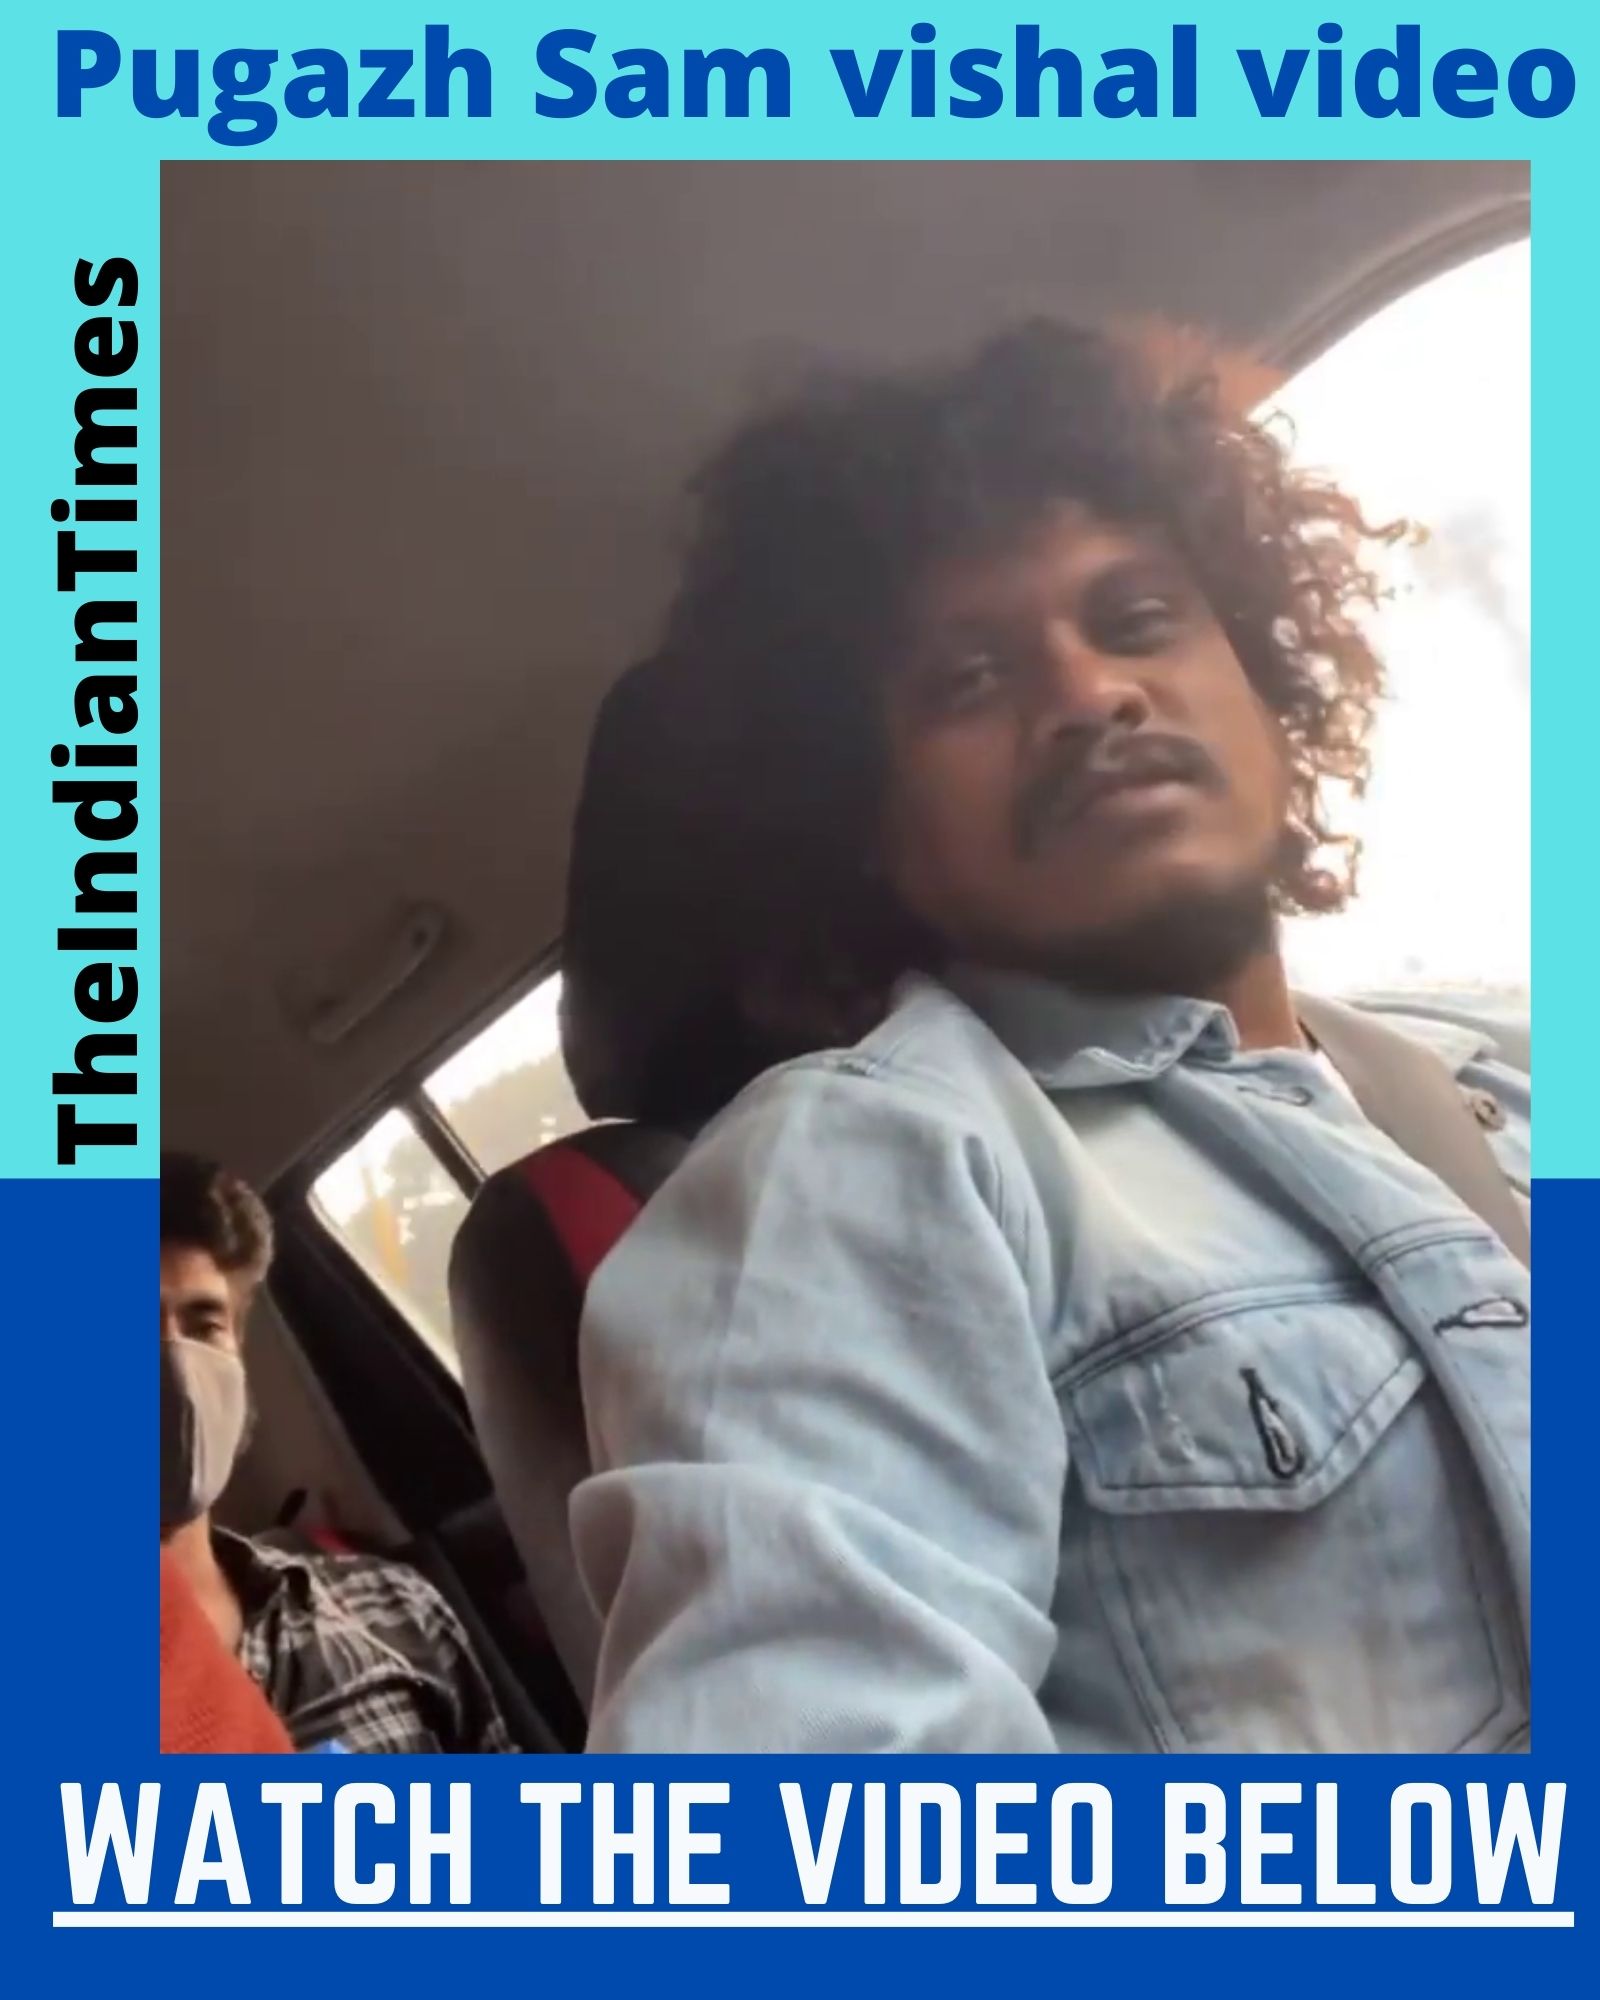 குக்கு வித் கோமாளி புகழுடன் car ride சென்ற சாம் விஷால் 1